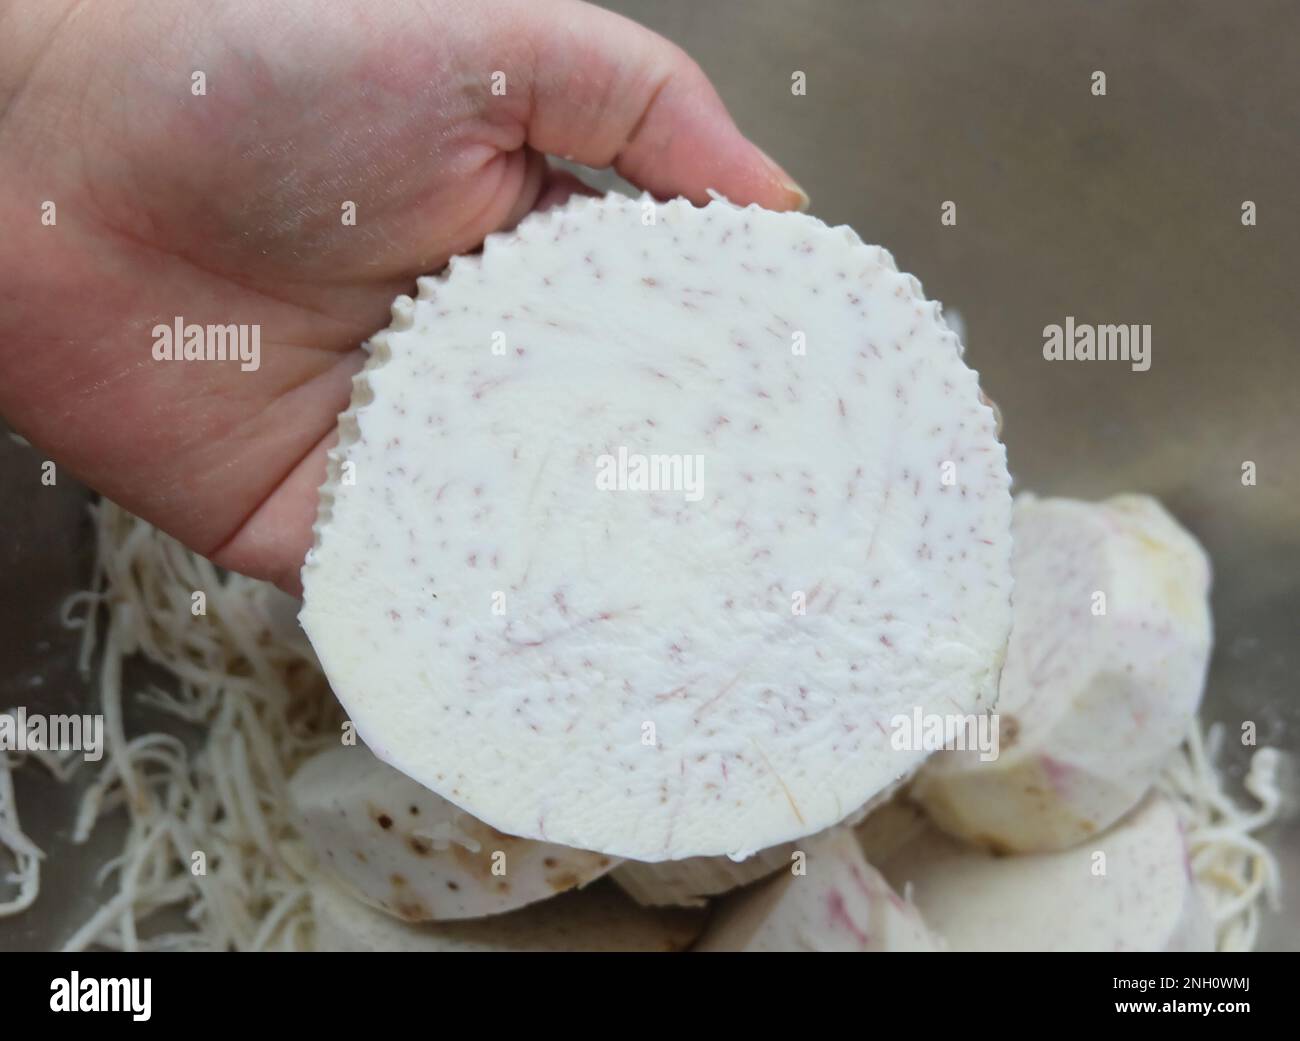 Handhalter mit frisch geschnittenen Taro-Wurzeln, Dasheen, japanischen Kartoffeln, Cocoyam oder Eddo. Stockfoto